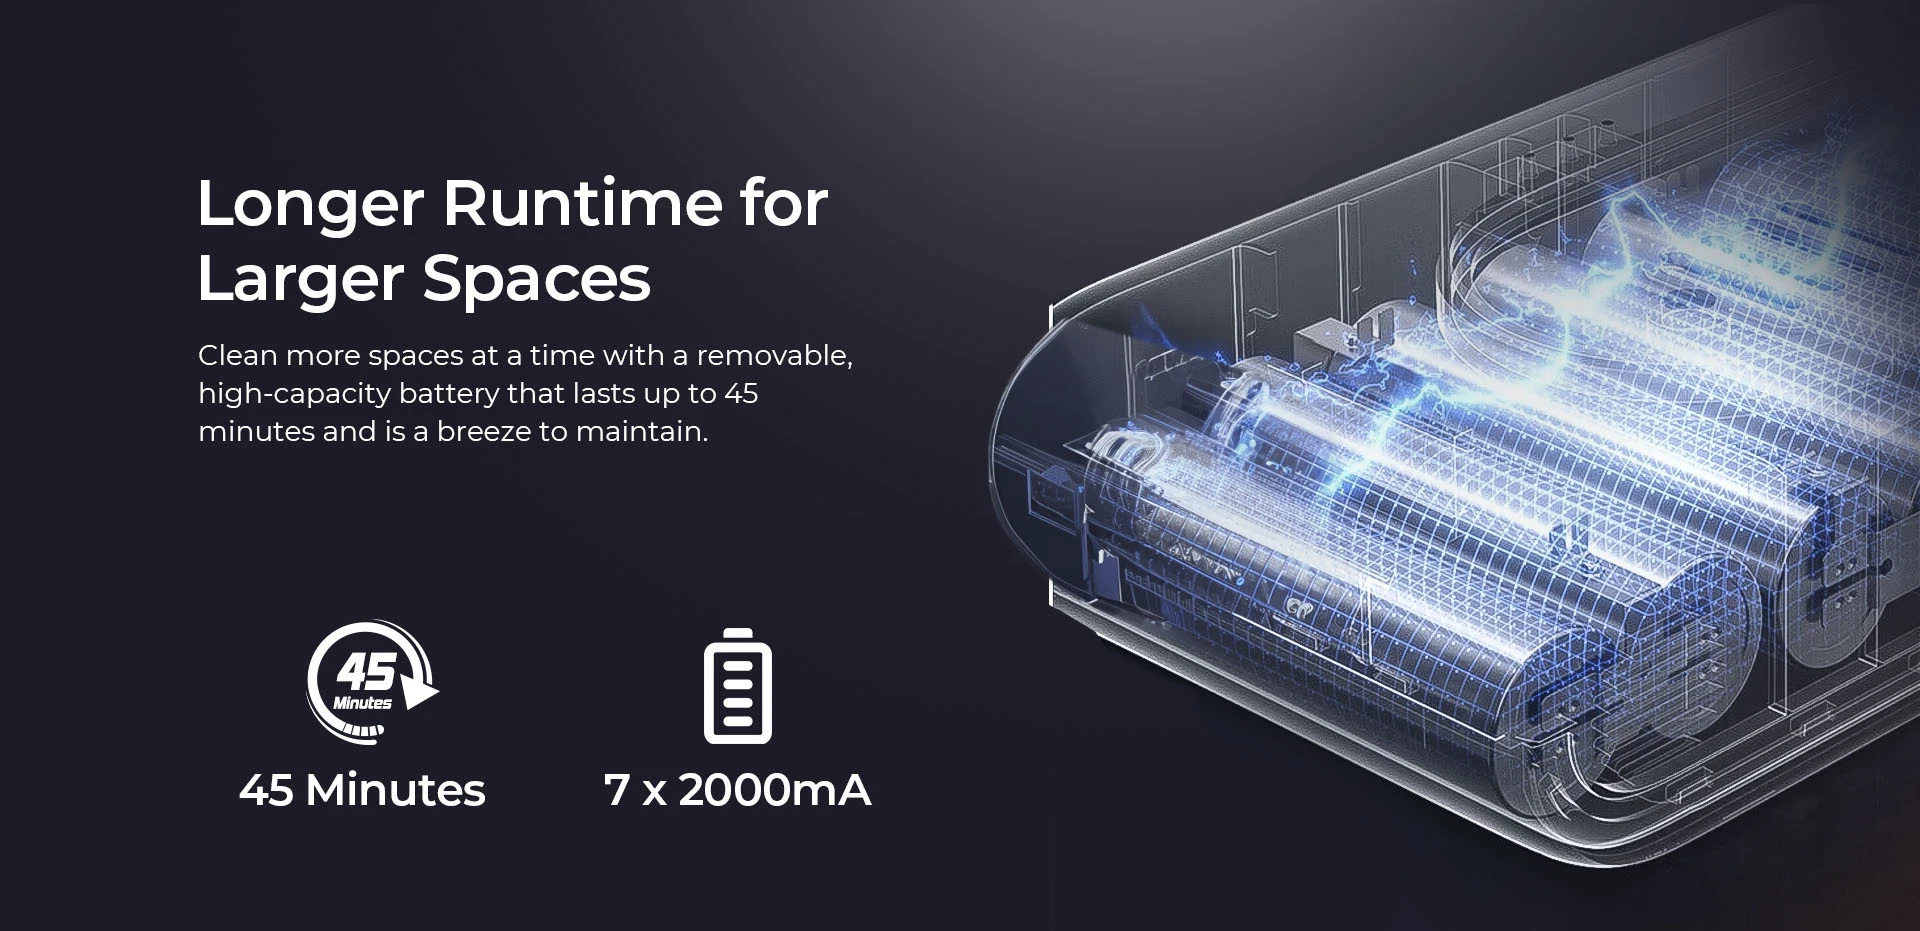 Безжична прахосмукачка JIGOO C300, 30KPa засмукване, 400W мотор, 1.2L купа за прах, 5-степенно филтриране, до 45 минути време на работа, 2000mAh сменяема батерия, LED сензорен екран, въртяща се метална тръба